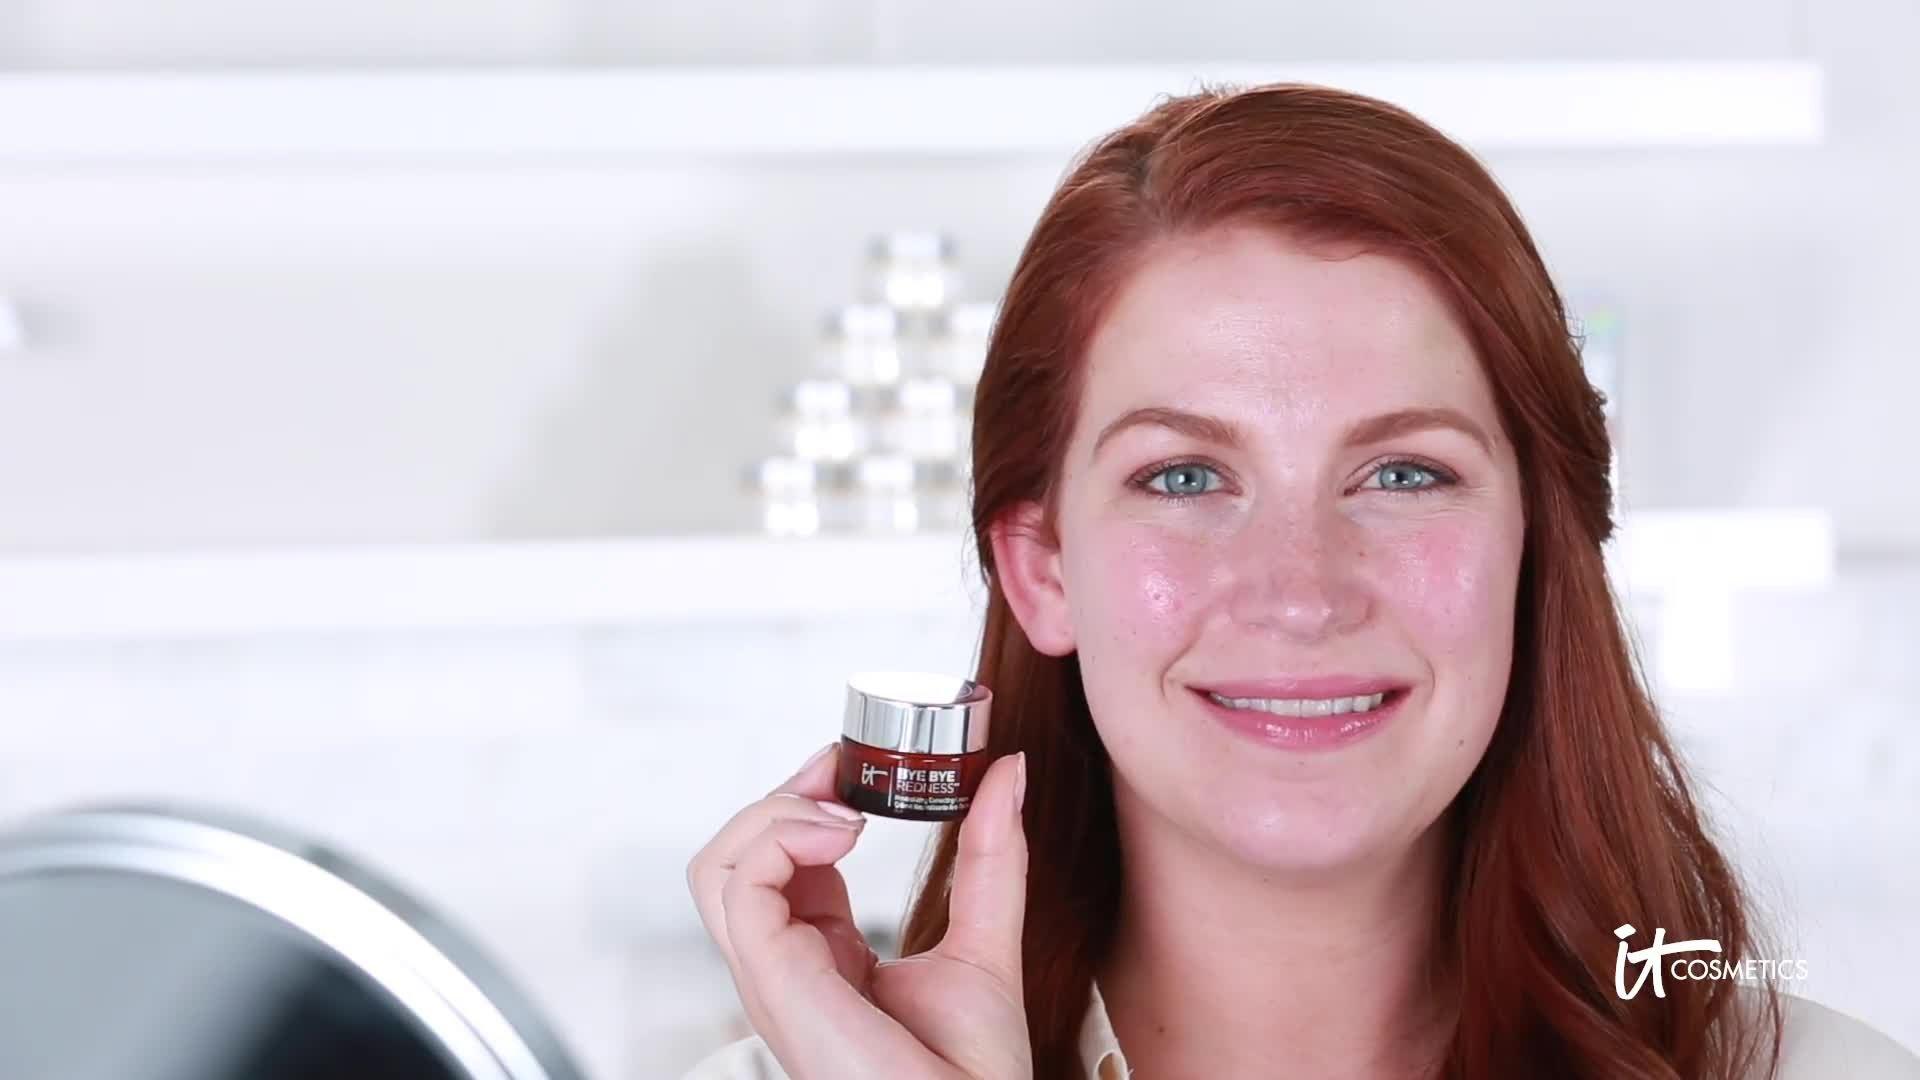 Bye Redness Neutralizing Concealer Cream IT | Ulta Beauty